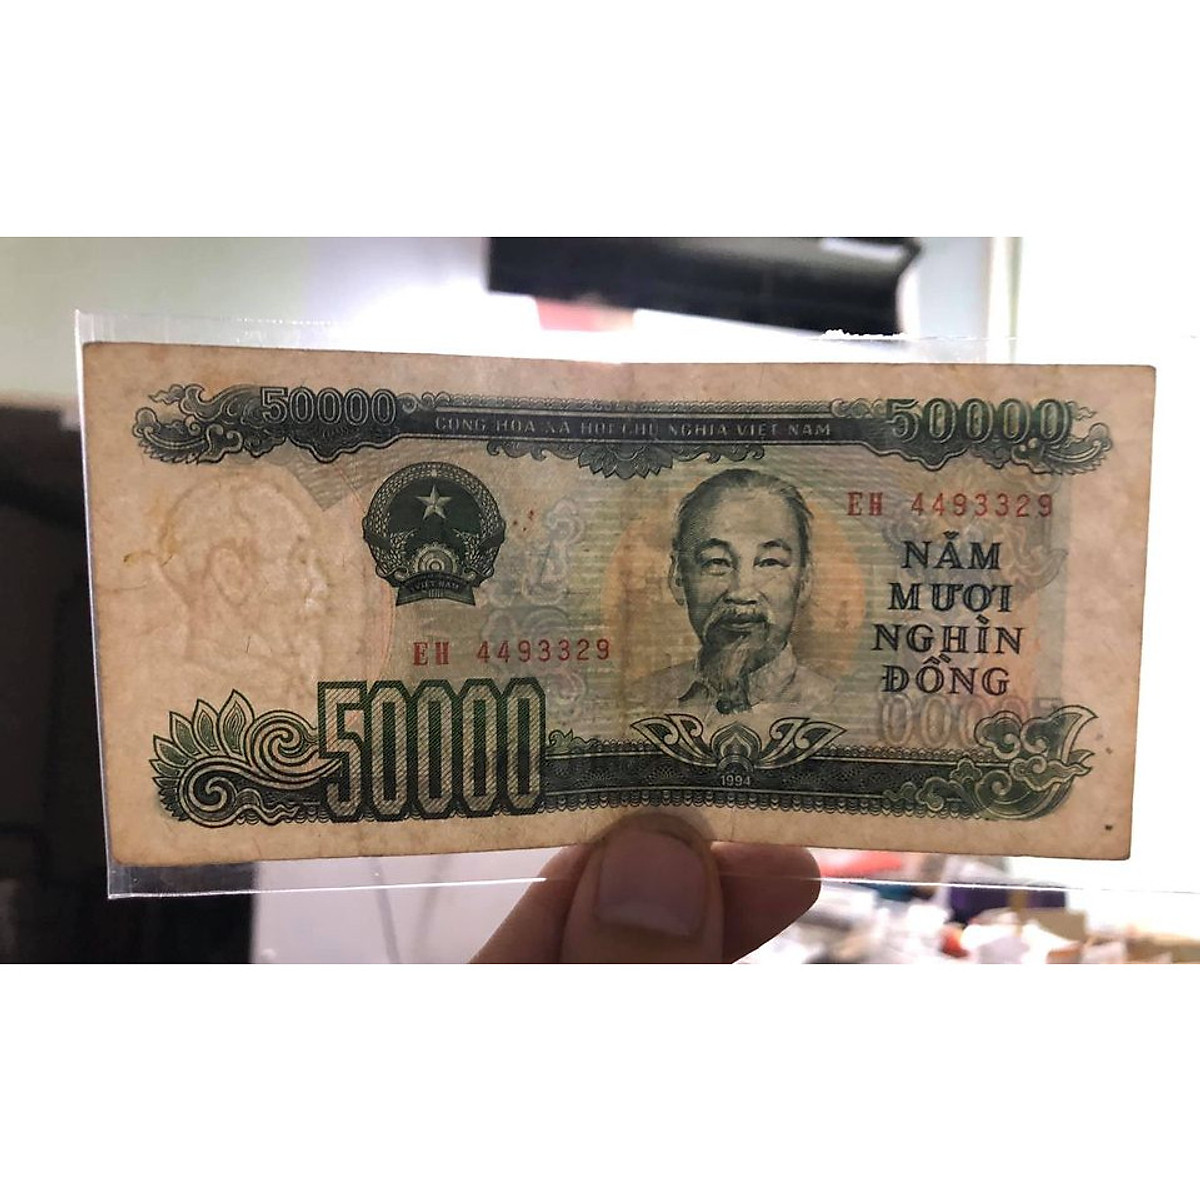 Tờ 50 ngàn đồng Việt Nam 1994, tiền xưa bao cấp sưu tầm - Chất lượng như hình, Tiền xưa thật 100%